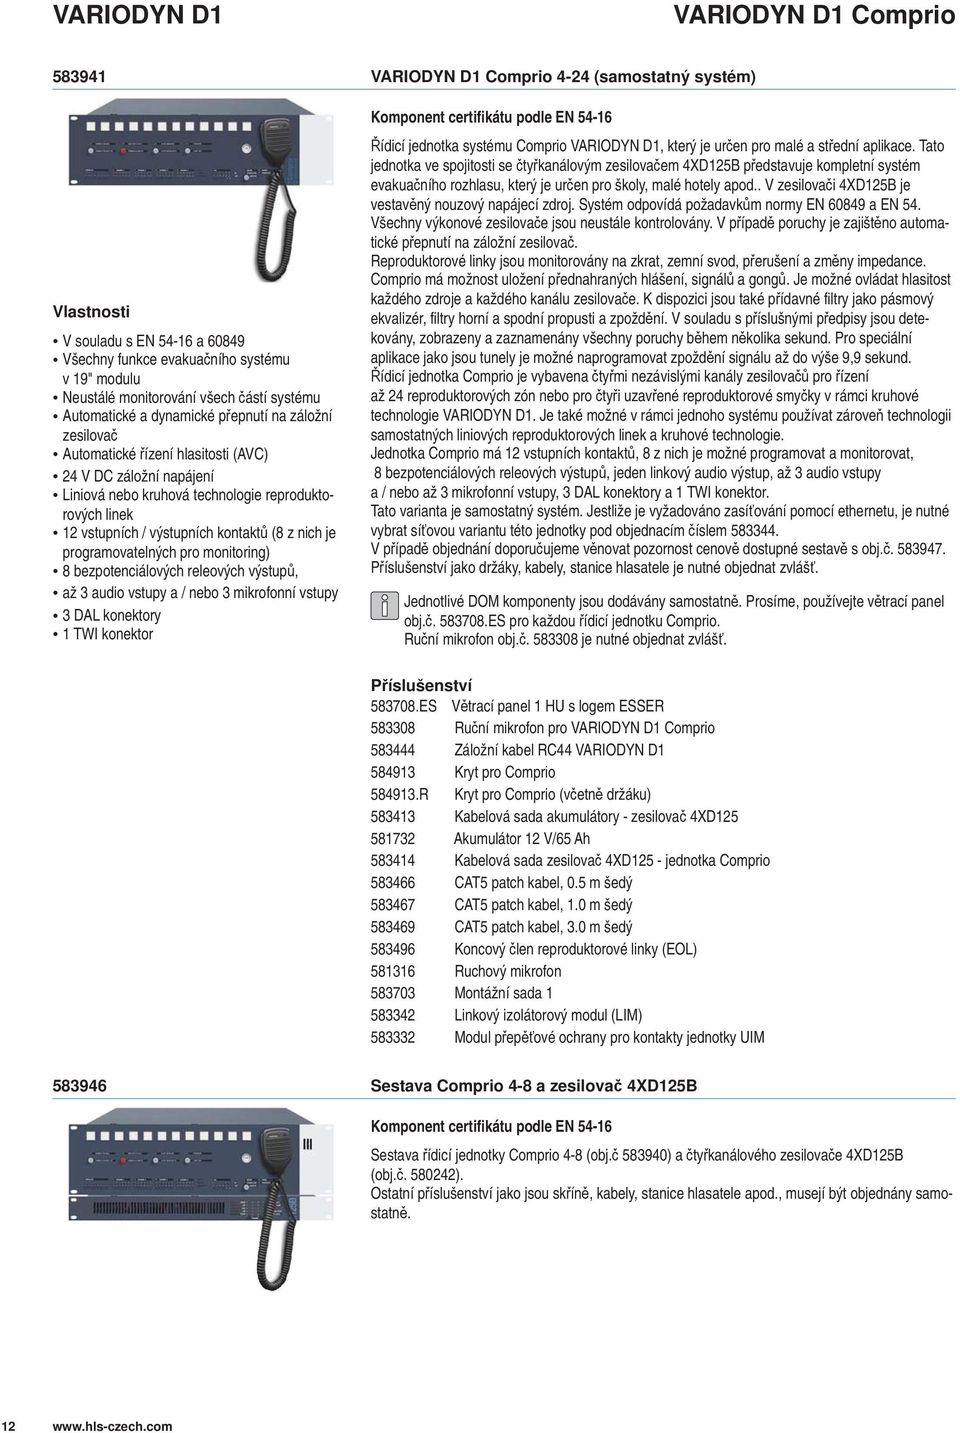 pro monitoring) 8 bezpotenciálových releových výstup, až audio vstupy a / nebo mikrofonní vstupy DAL konektory TWI konektor VARIODYN D Comprio 4-24 (samostatný systém) Komponent certifikátu podle EN